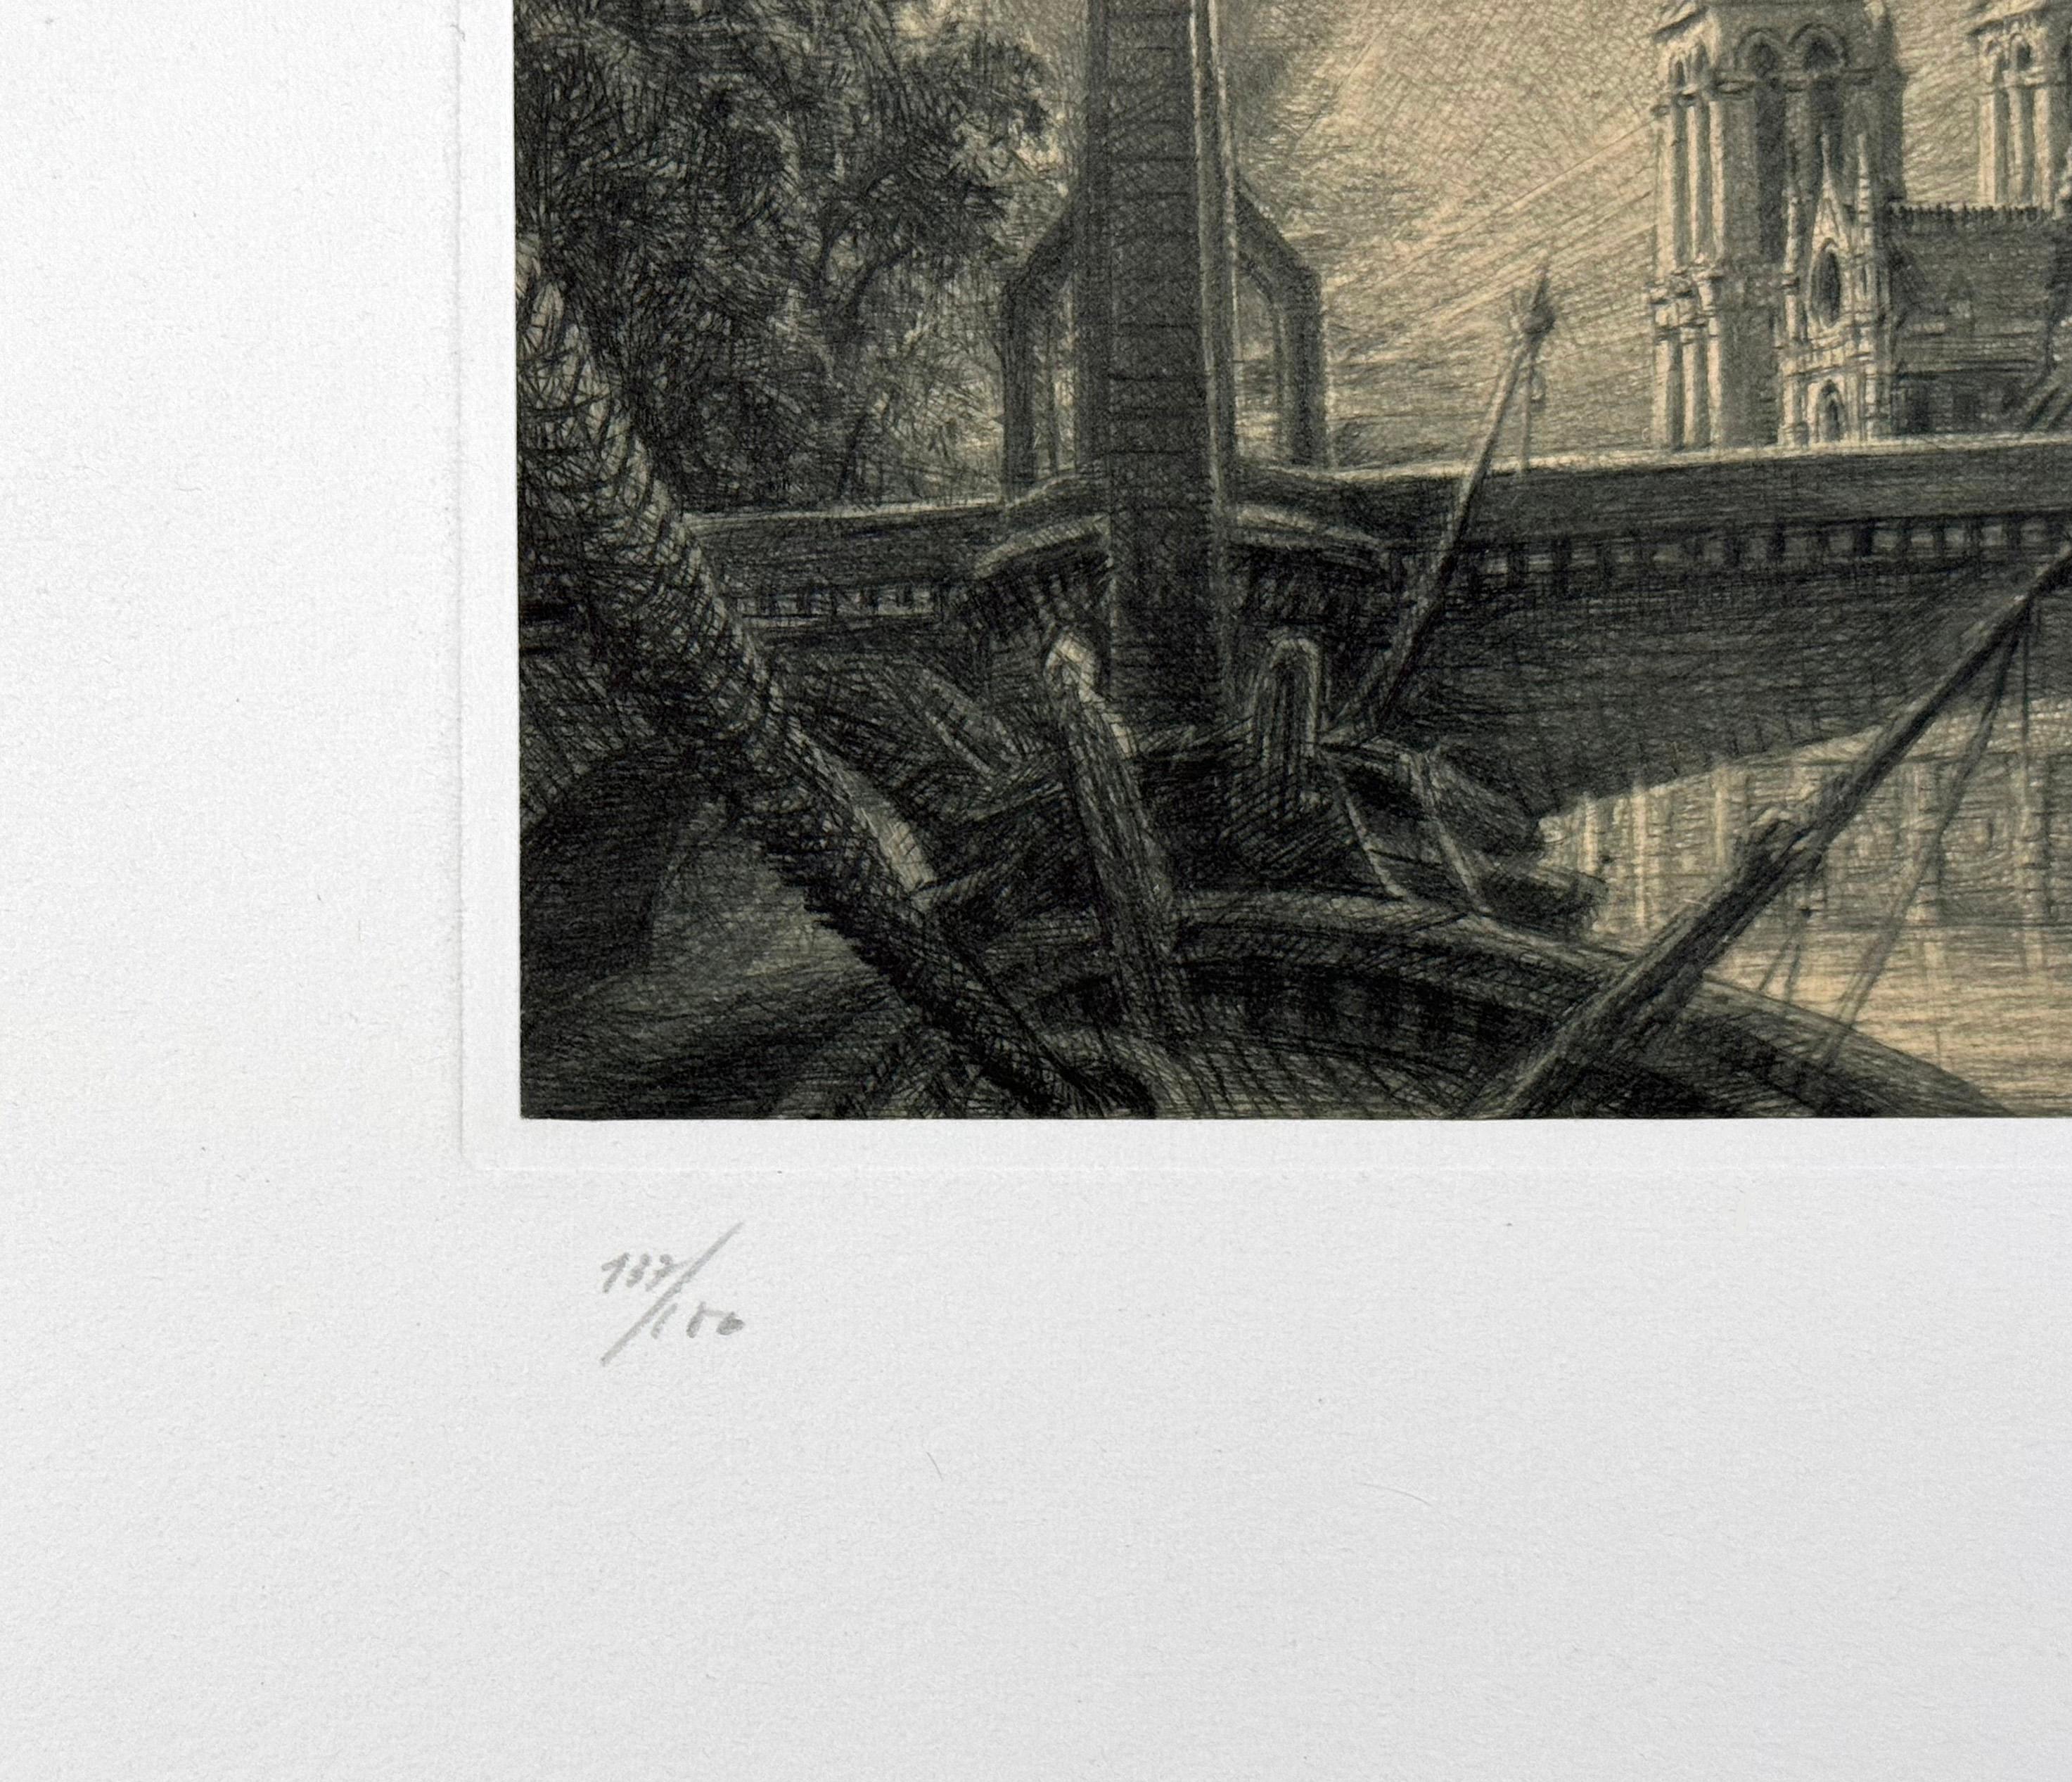 La Pont de la Tournelle, by JMM Mathieux-Marie - Contemporary Print by Jean Michel Mathieux-Marie